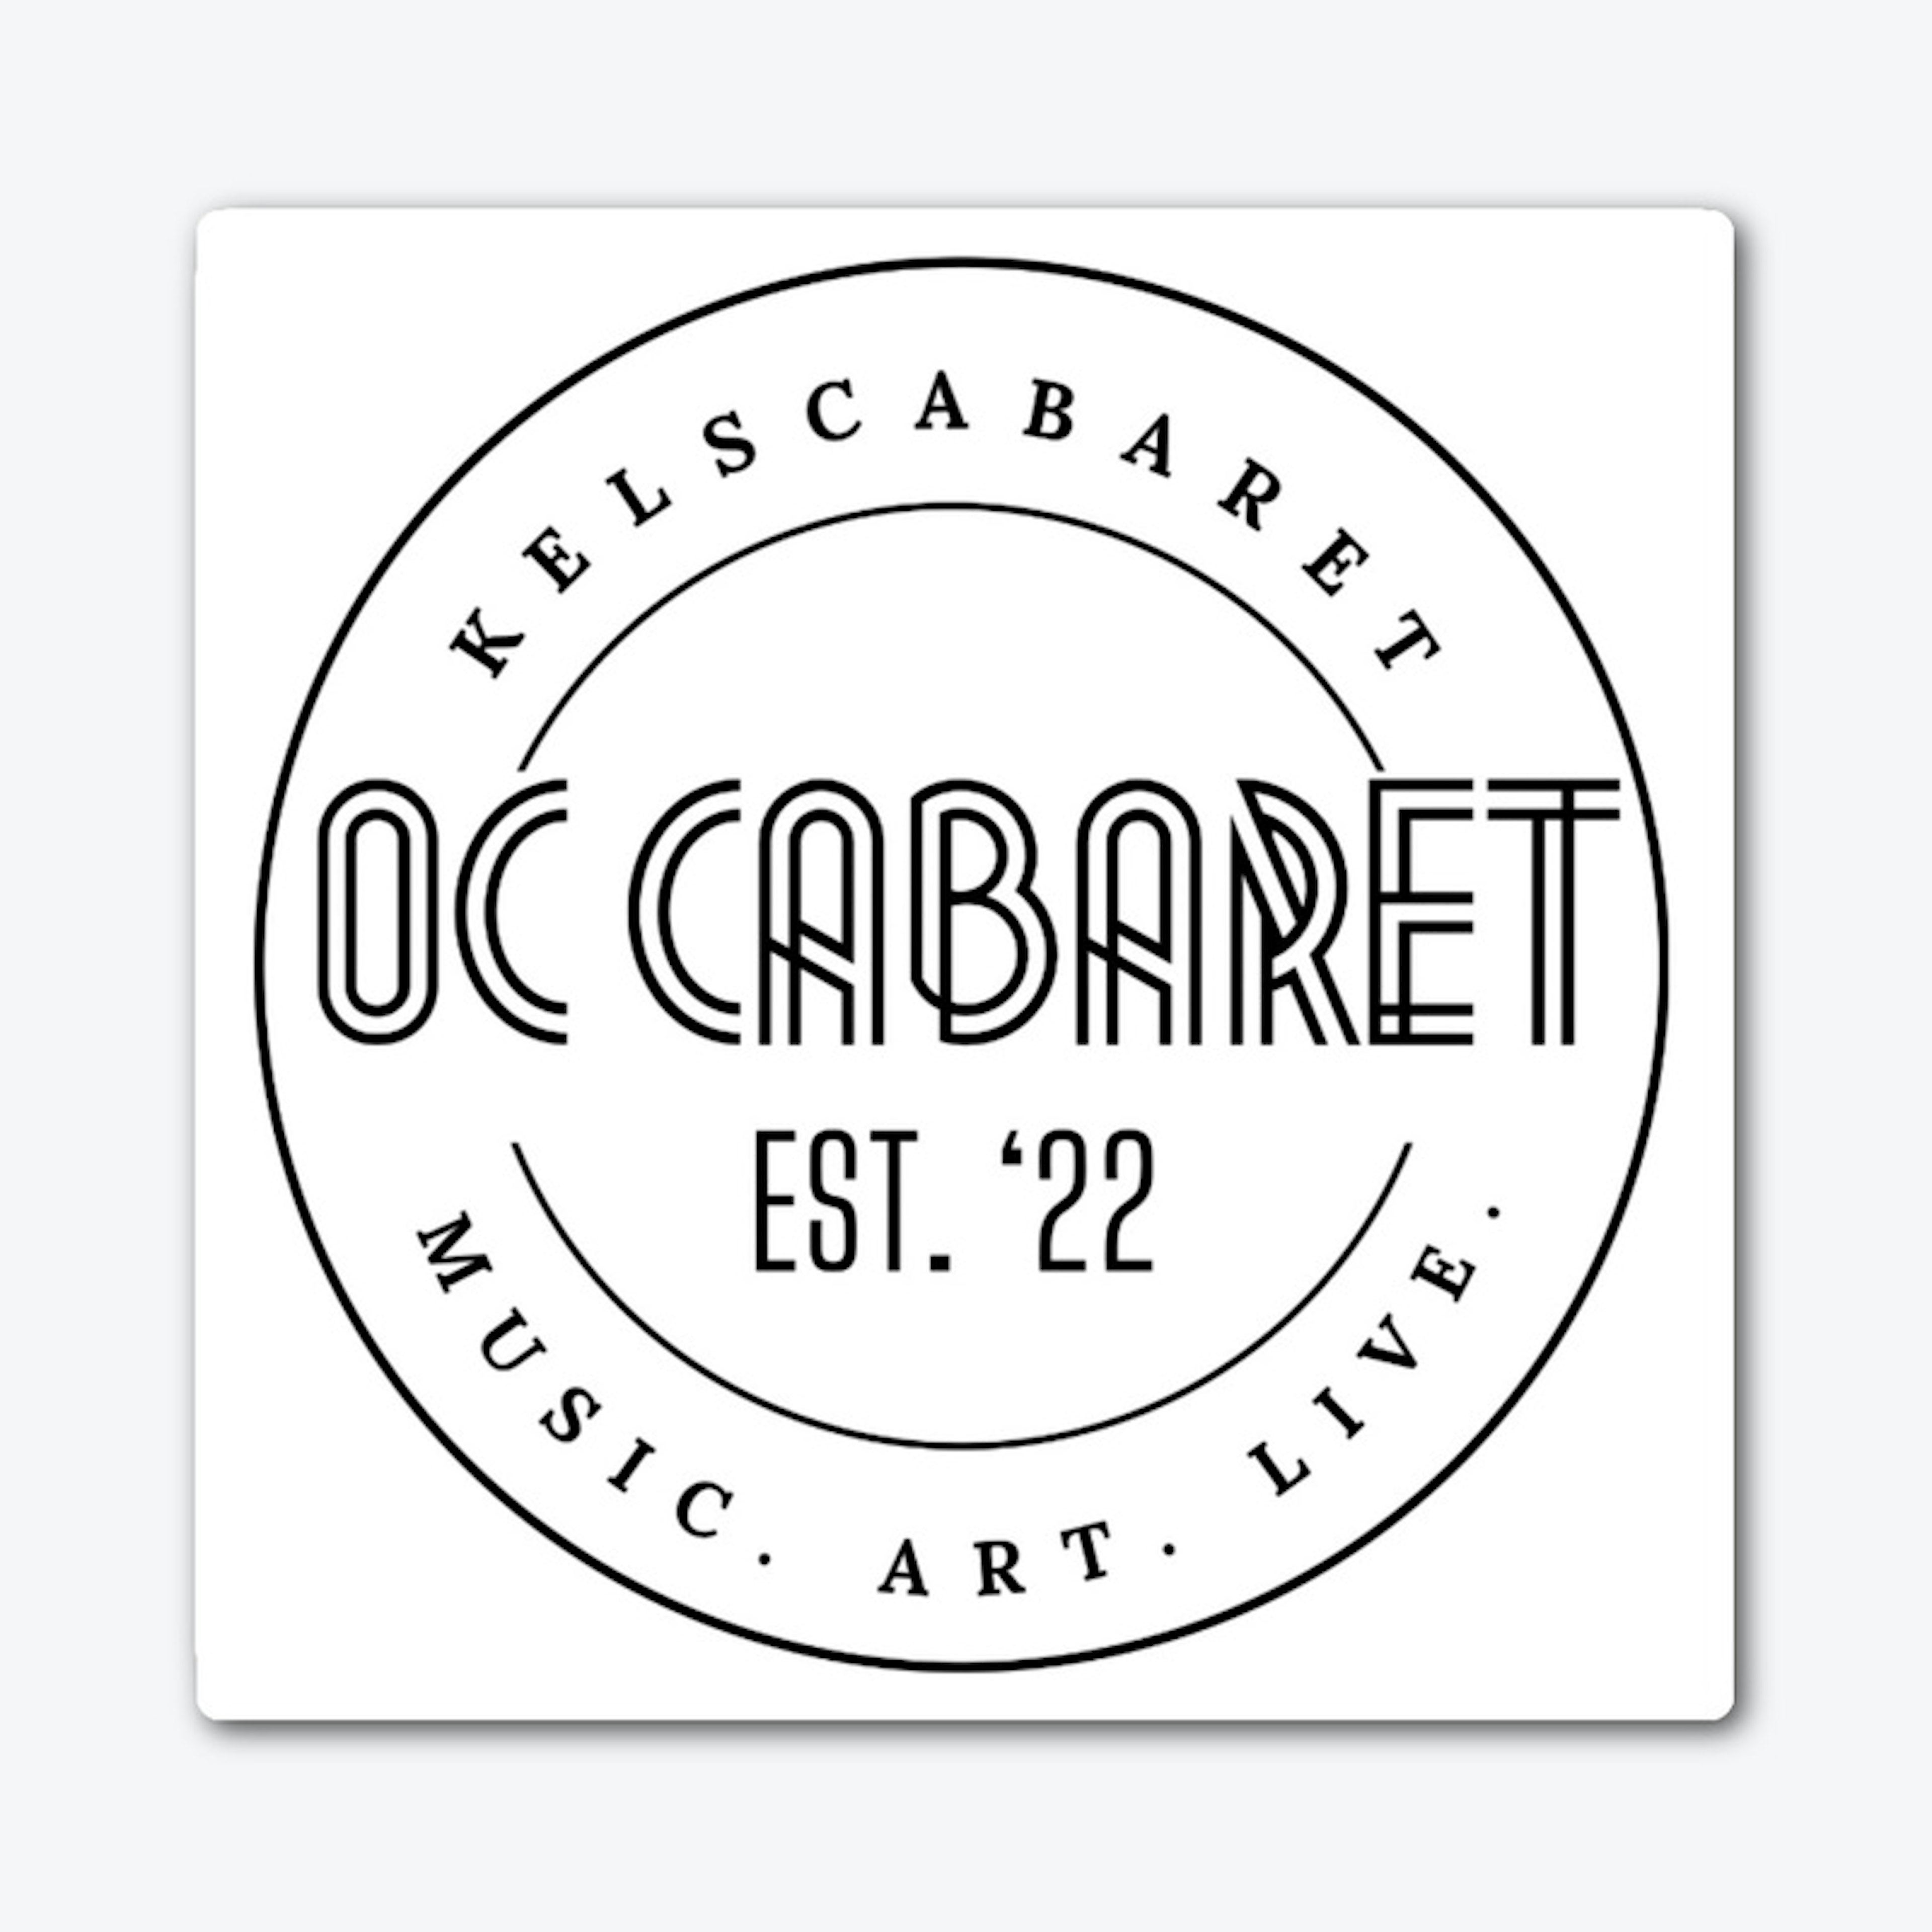 OC Cabaret Est. ‘22